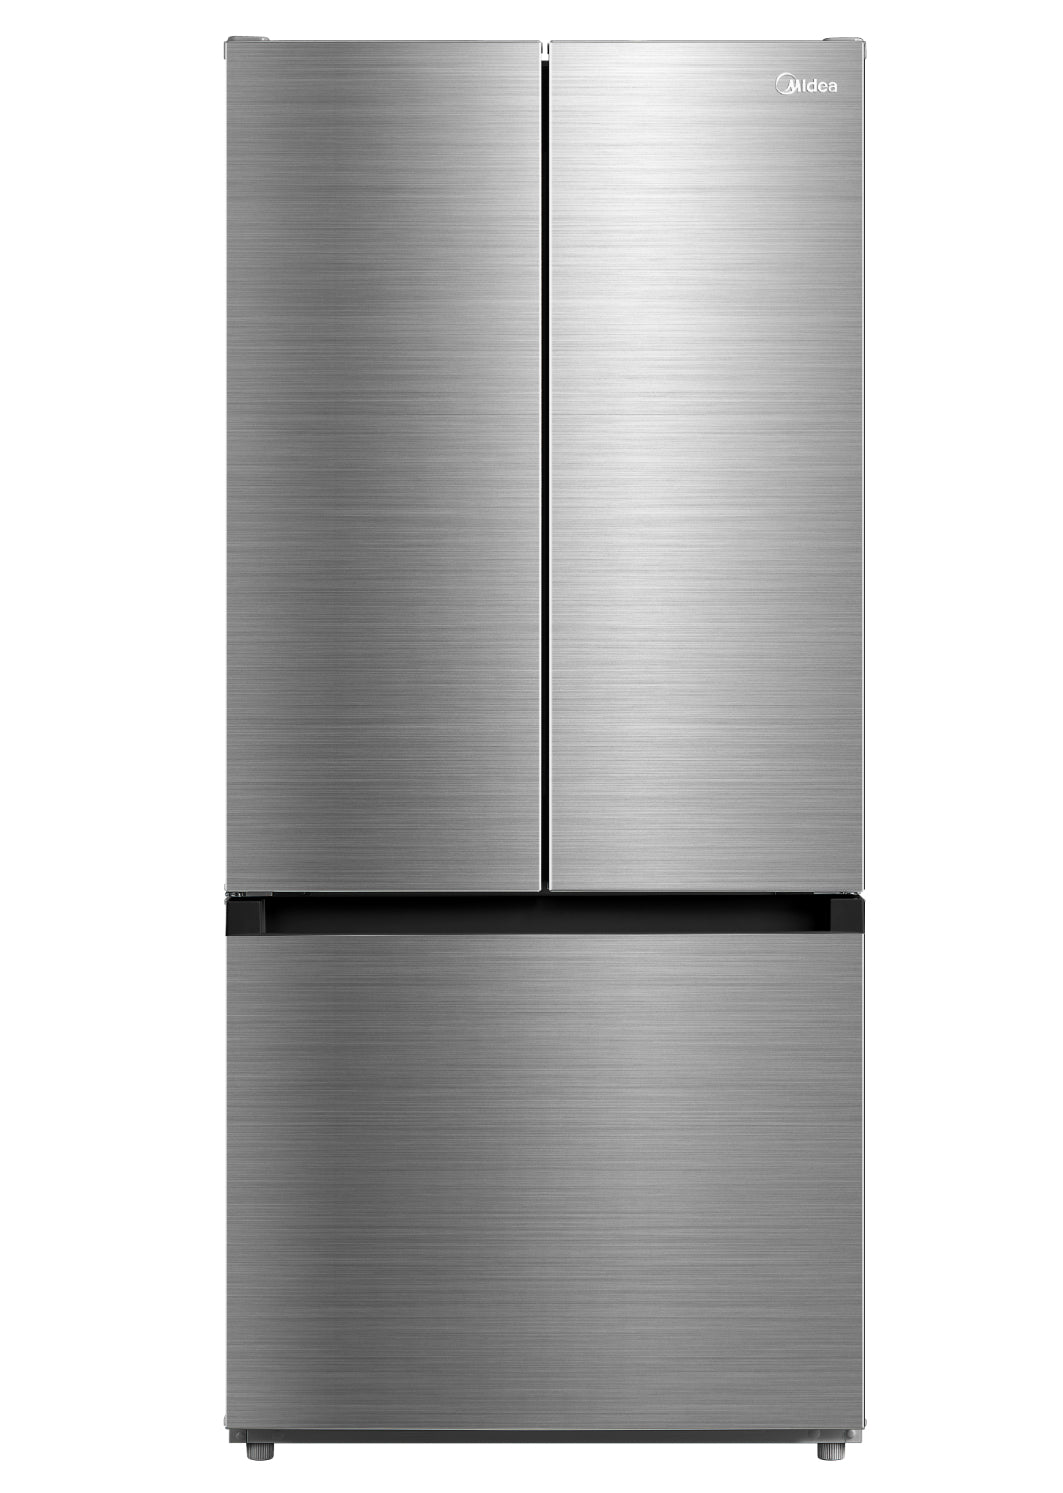 Refrigerador French Door Plus Inverter Bru Steel 19 Pies Cúbicos / 529 L